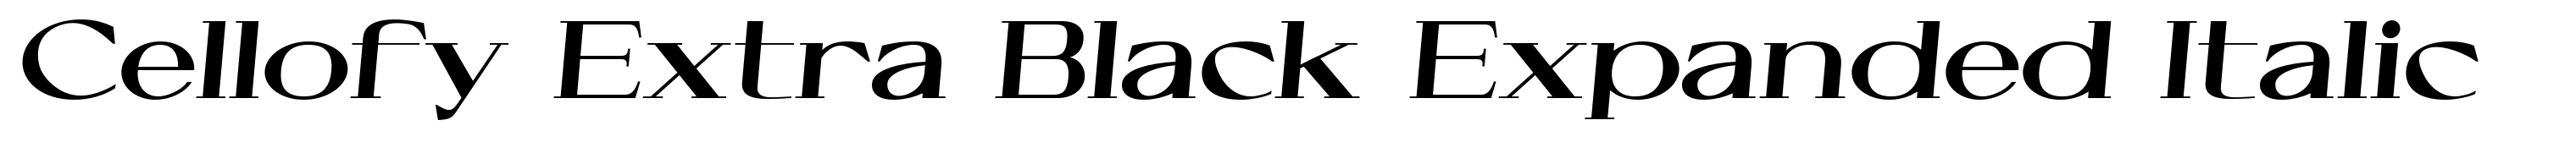 Cellofy Extra Black Expanded Italic